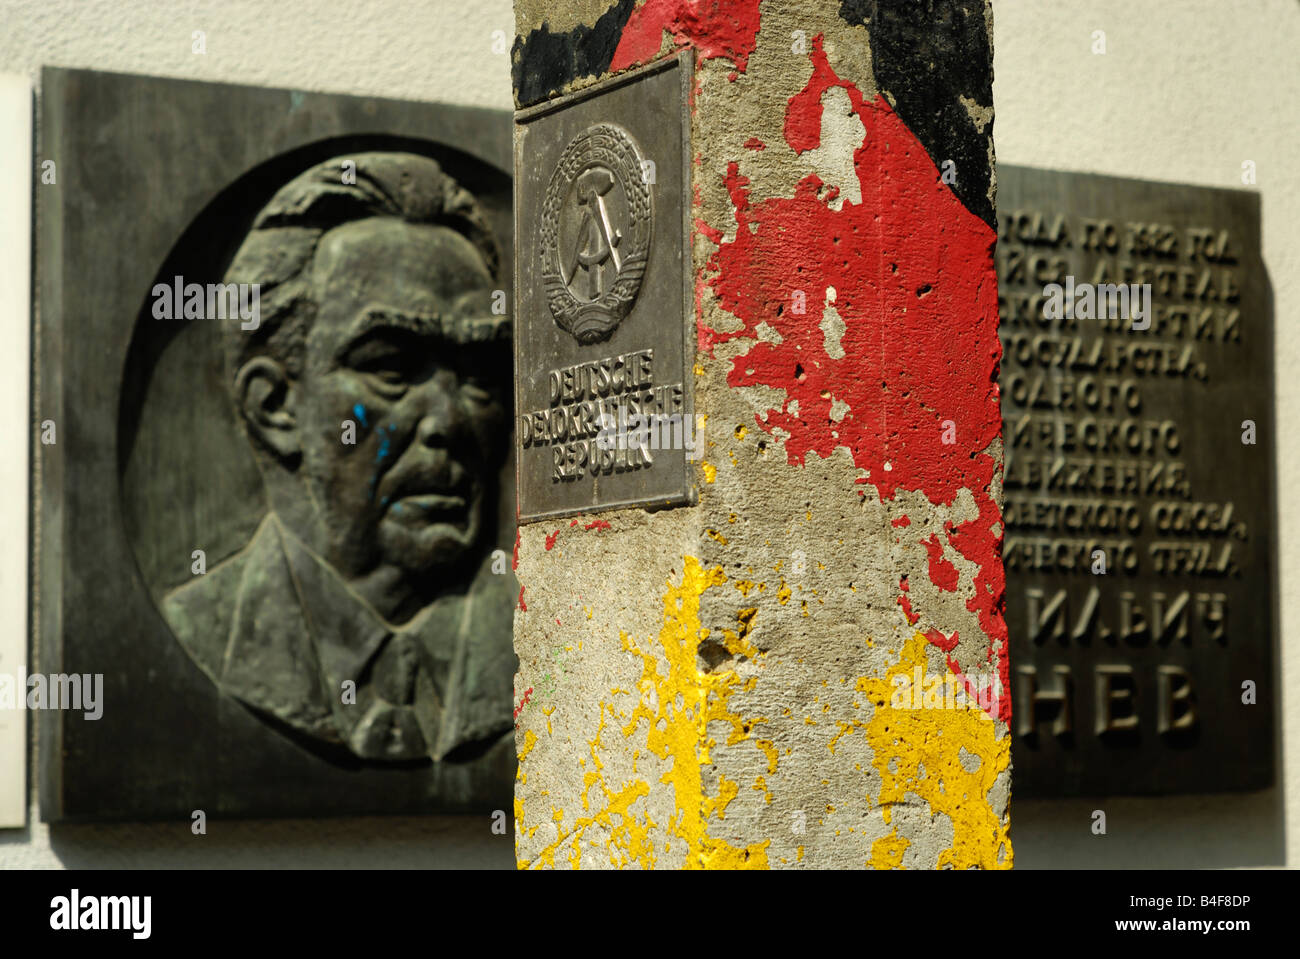 Old Deutsche Demokratische Republik border stone at Checkpoint Charlie Museum, Berlin Stock Photo